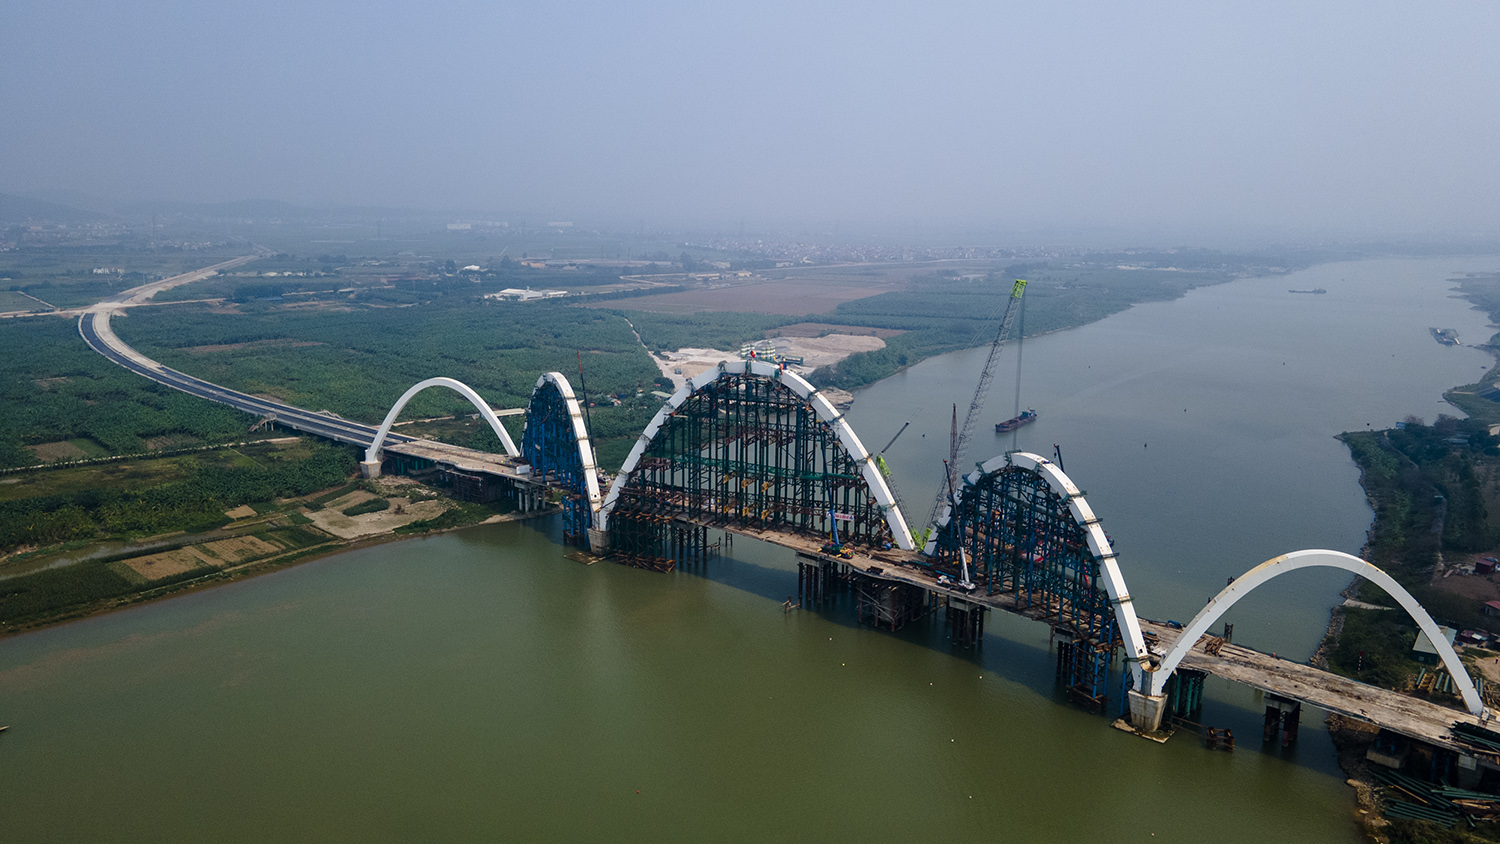 Cầu Phật Tích&nbsp;- Đại Đồng Thành bắc qua sông Đuống (Bắc Ninh). Cầu được khởi công xây dựng vào tháng 1/2018, do Ban quản lý xây dựng giao thông tỉnh Bắc Ninh làm chủ đầu tư và thực hiện quản lý khai thác vận hành.